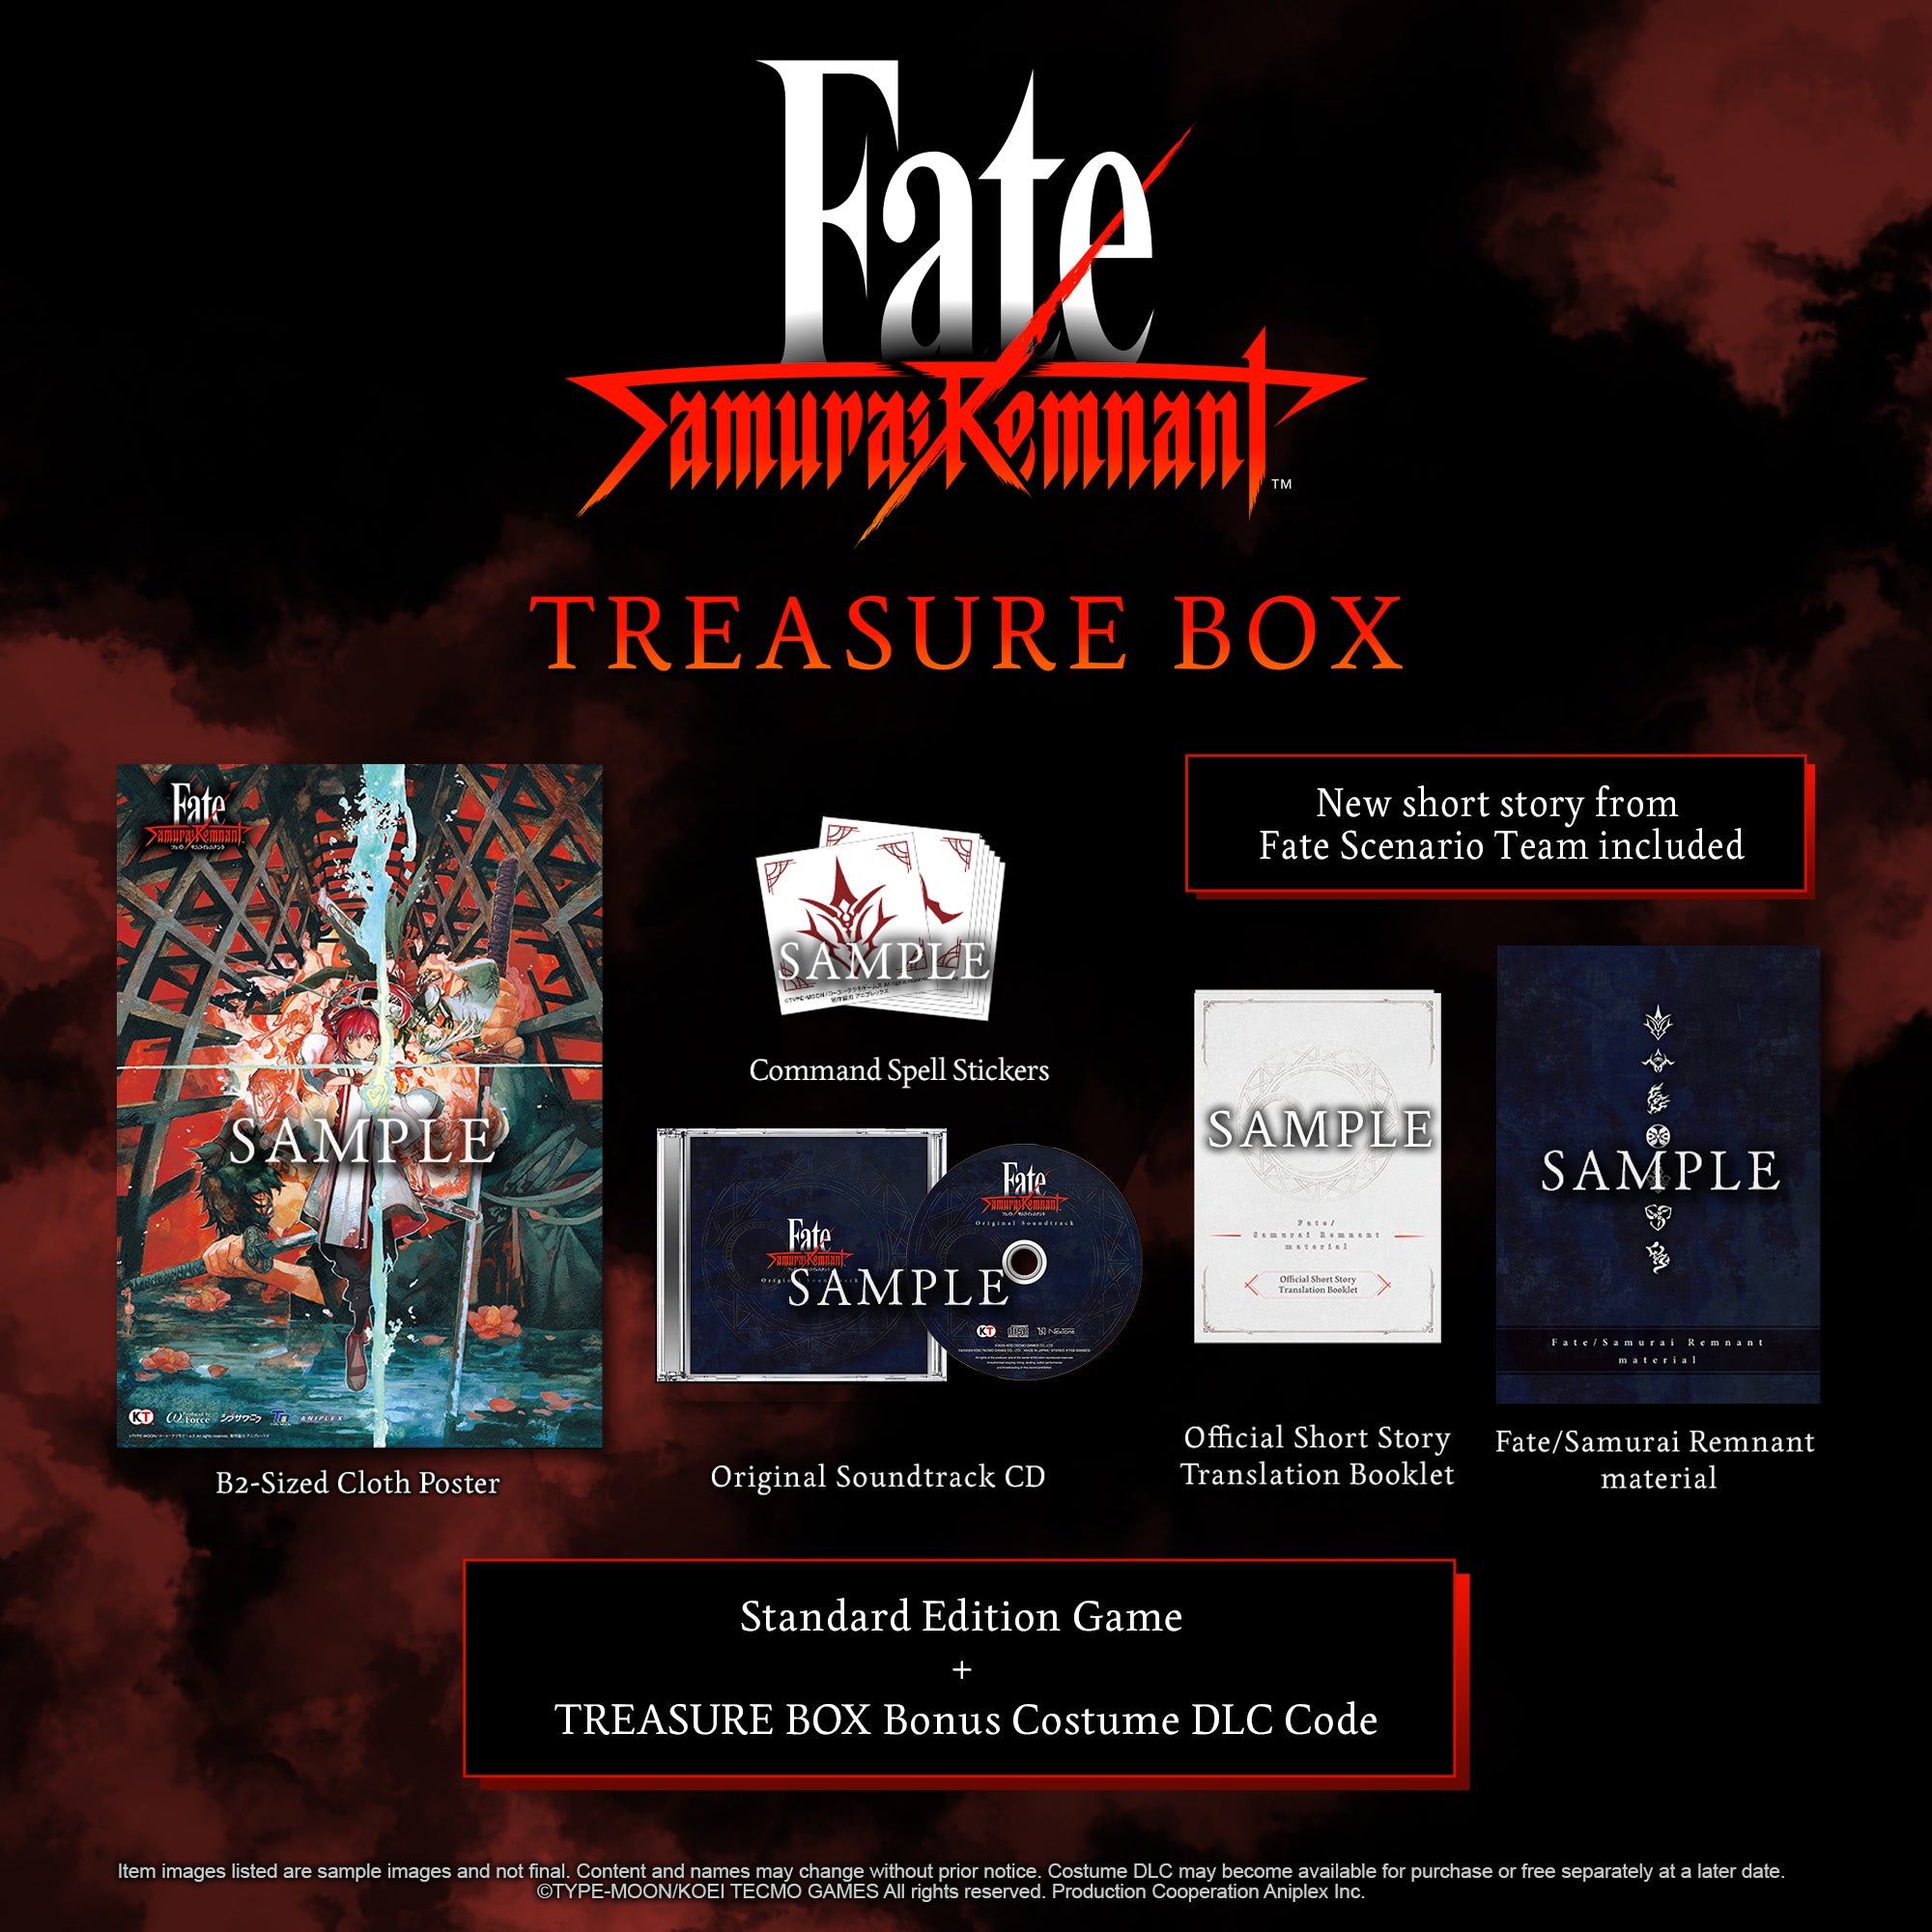 Fate/Samurai Remnant material 未開封サムライレムナントマテリアル 